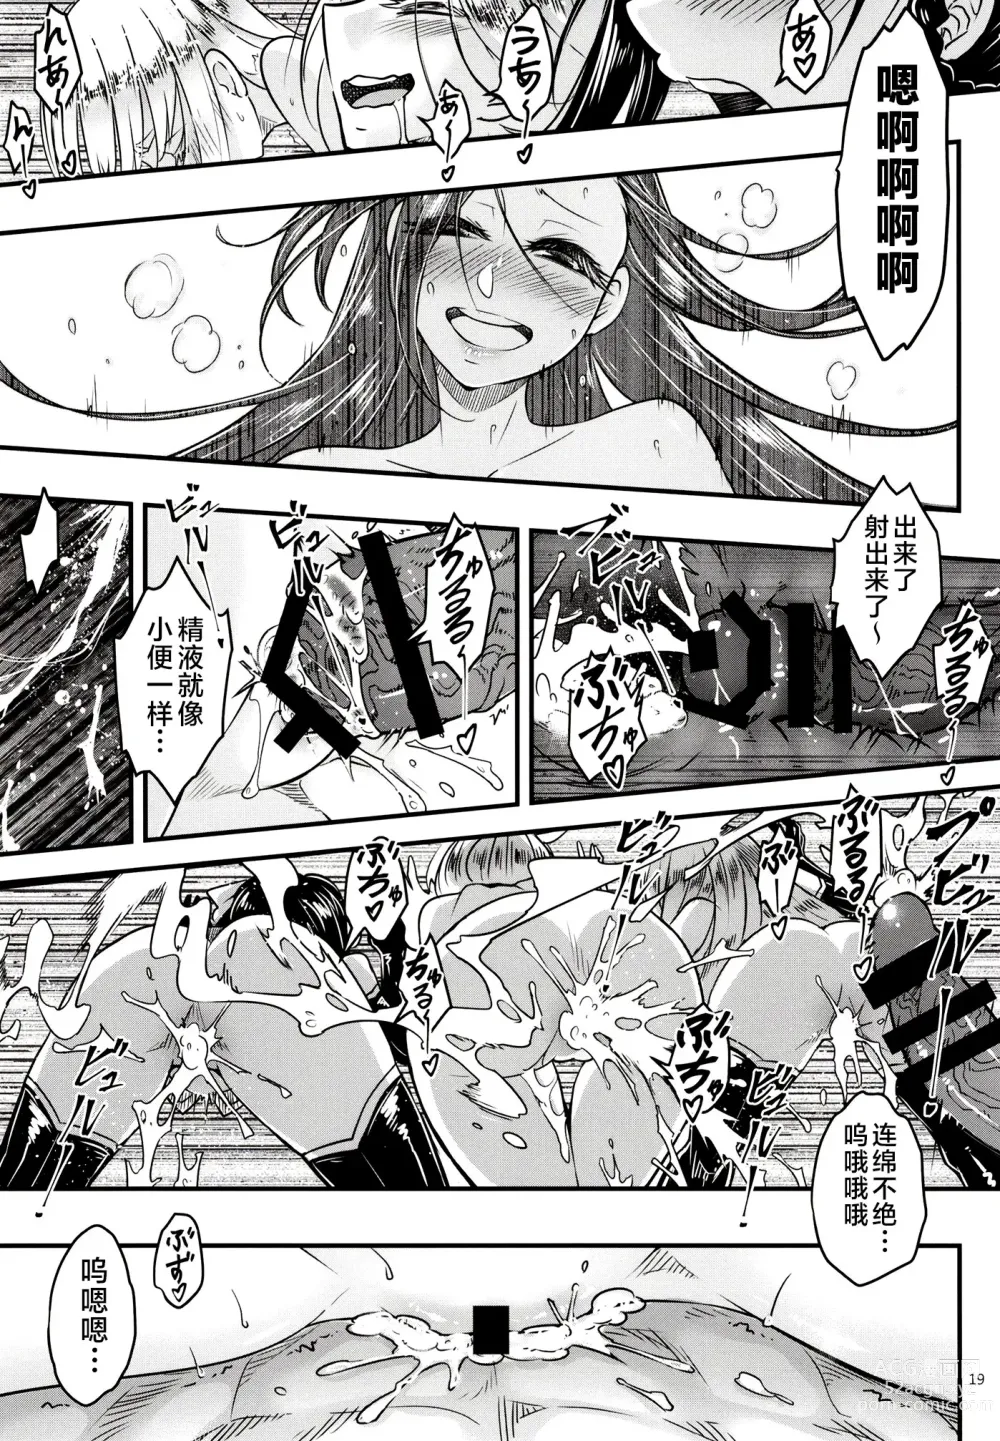 Page 21 of doujinshi Hyakkasou 12 <<Jitsuroku Makyou Hyakkasou Kikou>>